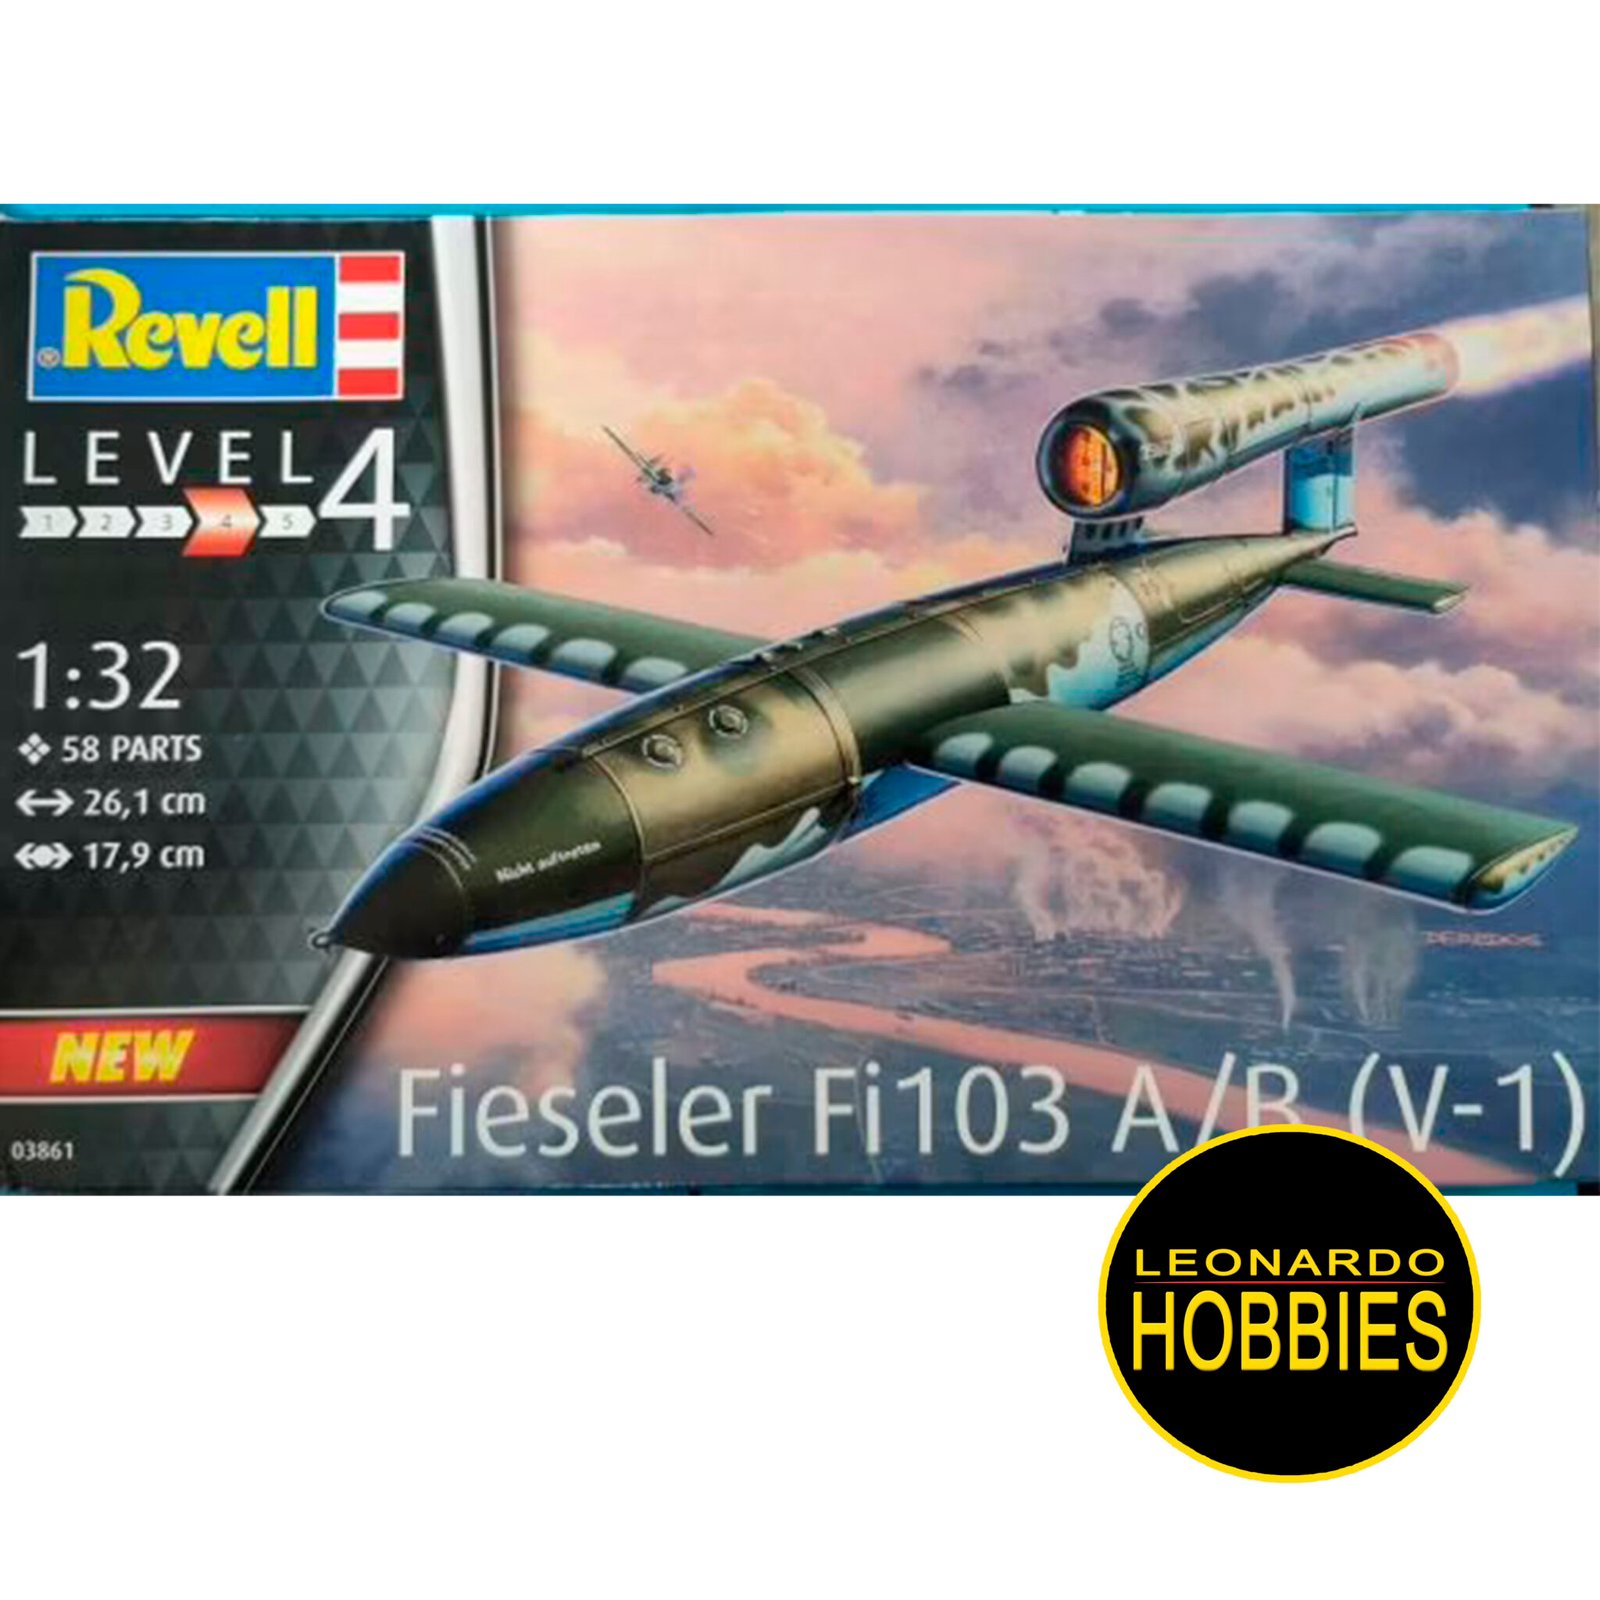 Fieseler Fi103 V-1 Escala 1/32 Revell 03861 – Leonardo Hobbies, maquetas  revell